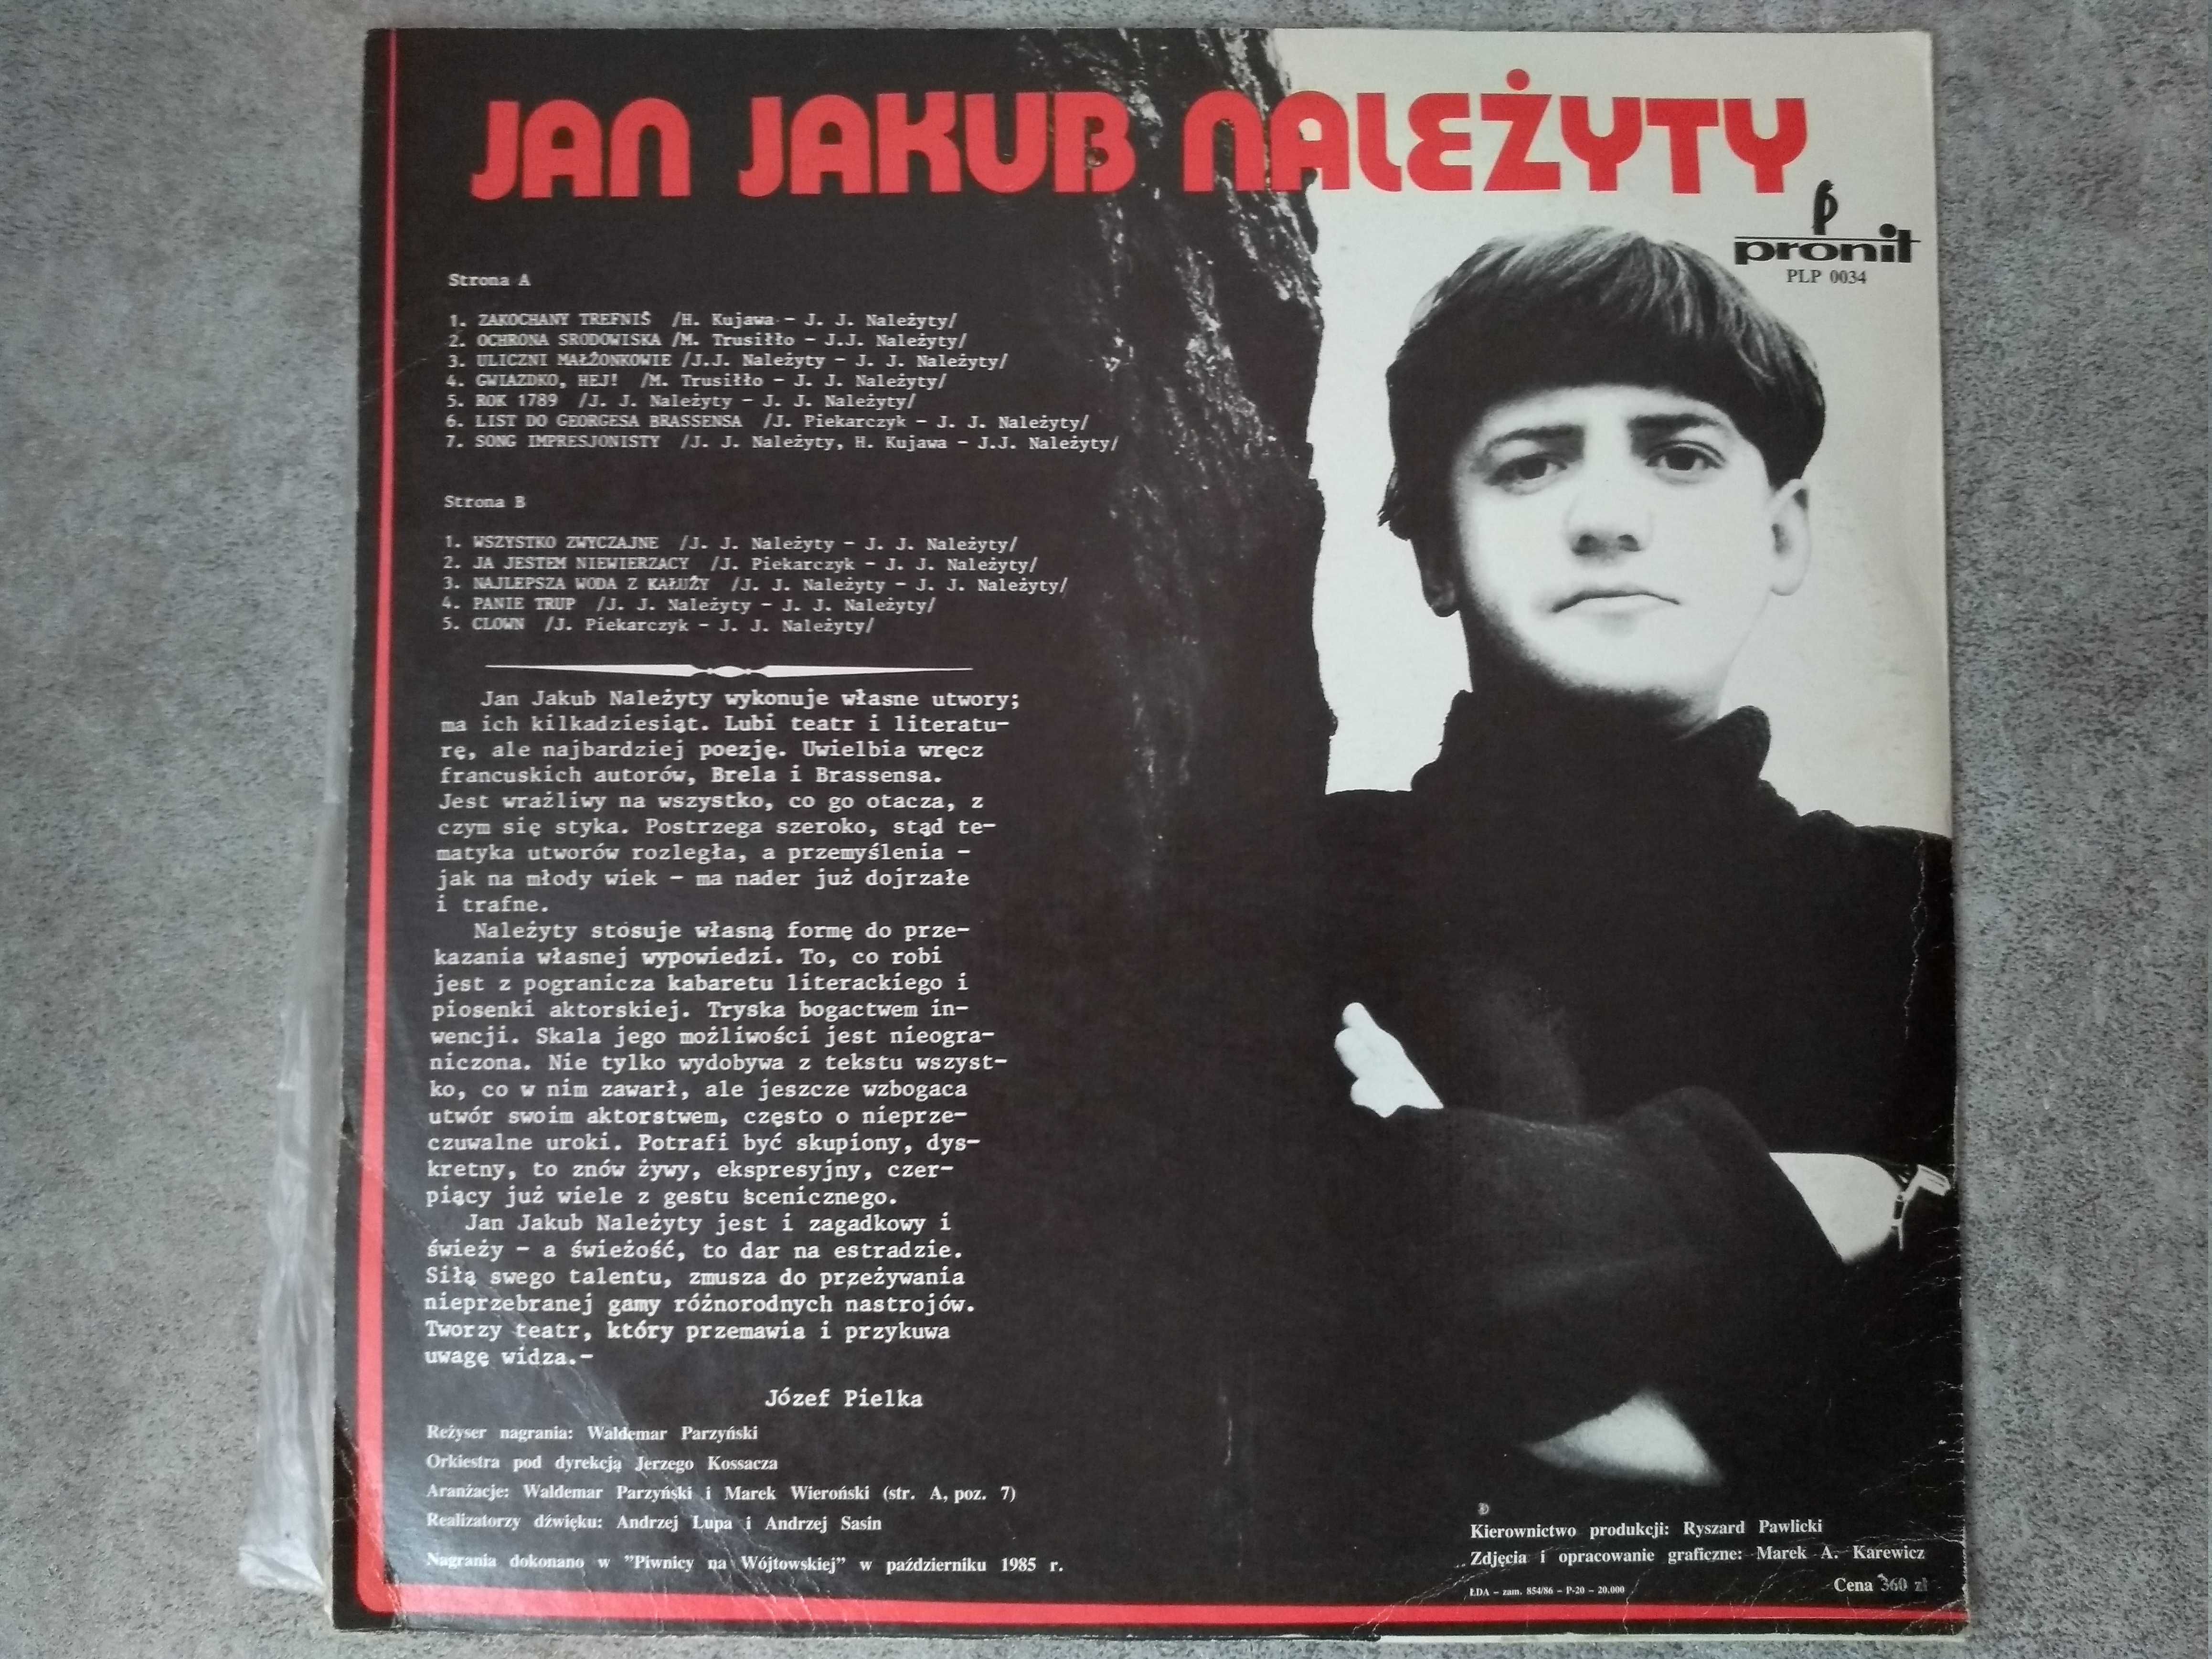 Jan Jakub Należyty - Recital - LP - płyta gramofonowa, winyl - 1986